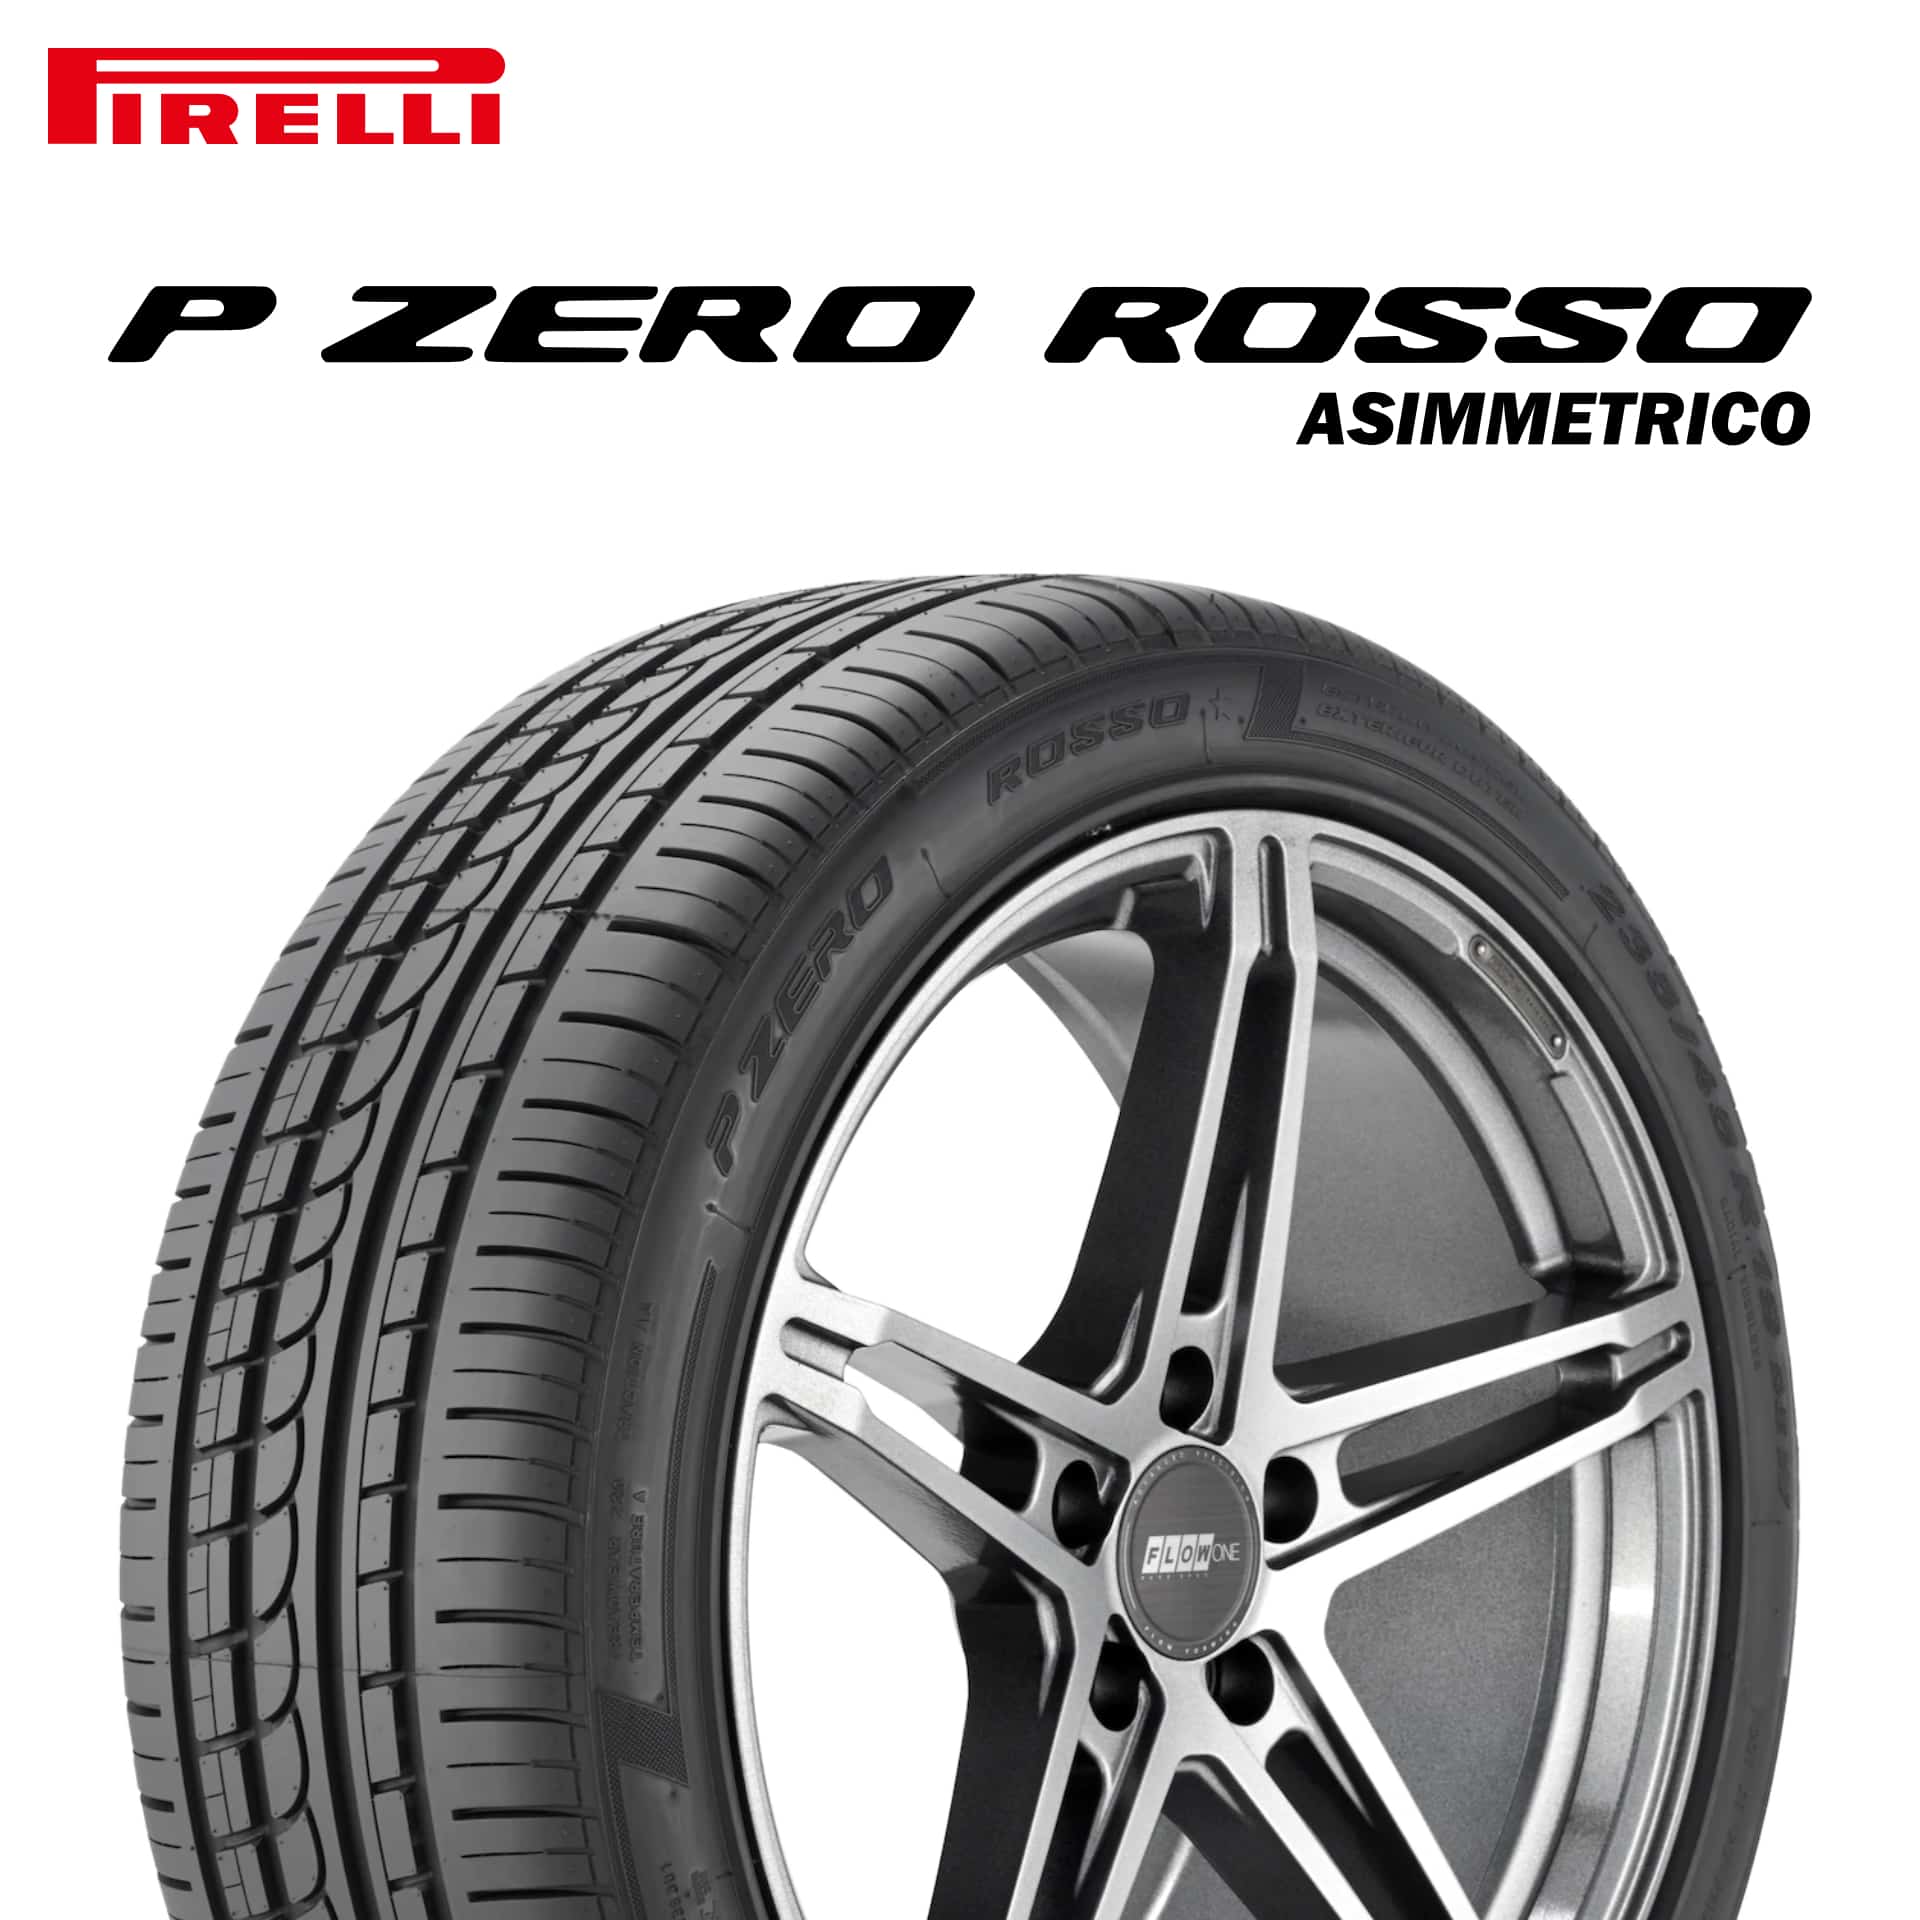 22年製 295/30R18 (98Y) XL N4 ピレリ P ZERO ROSSO ASIMMETRICO (ピーゼロ ロッソ アシンメトリコ) ポルシェ承認タイヤ 18インチ 新品